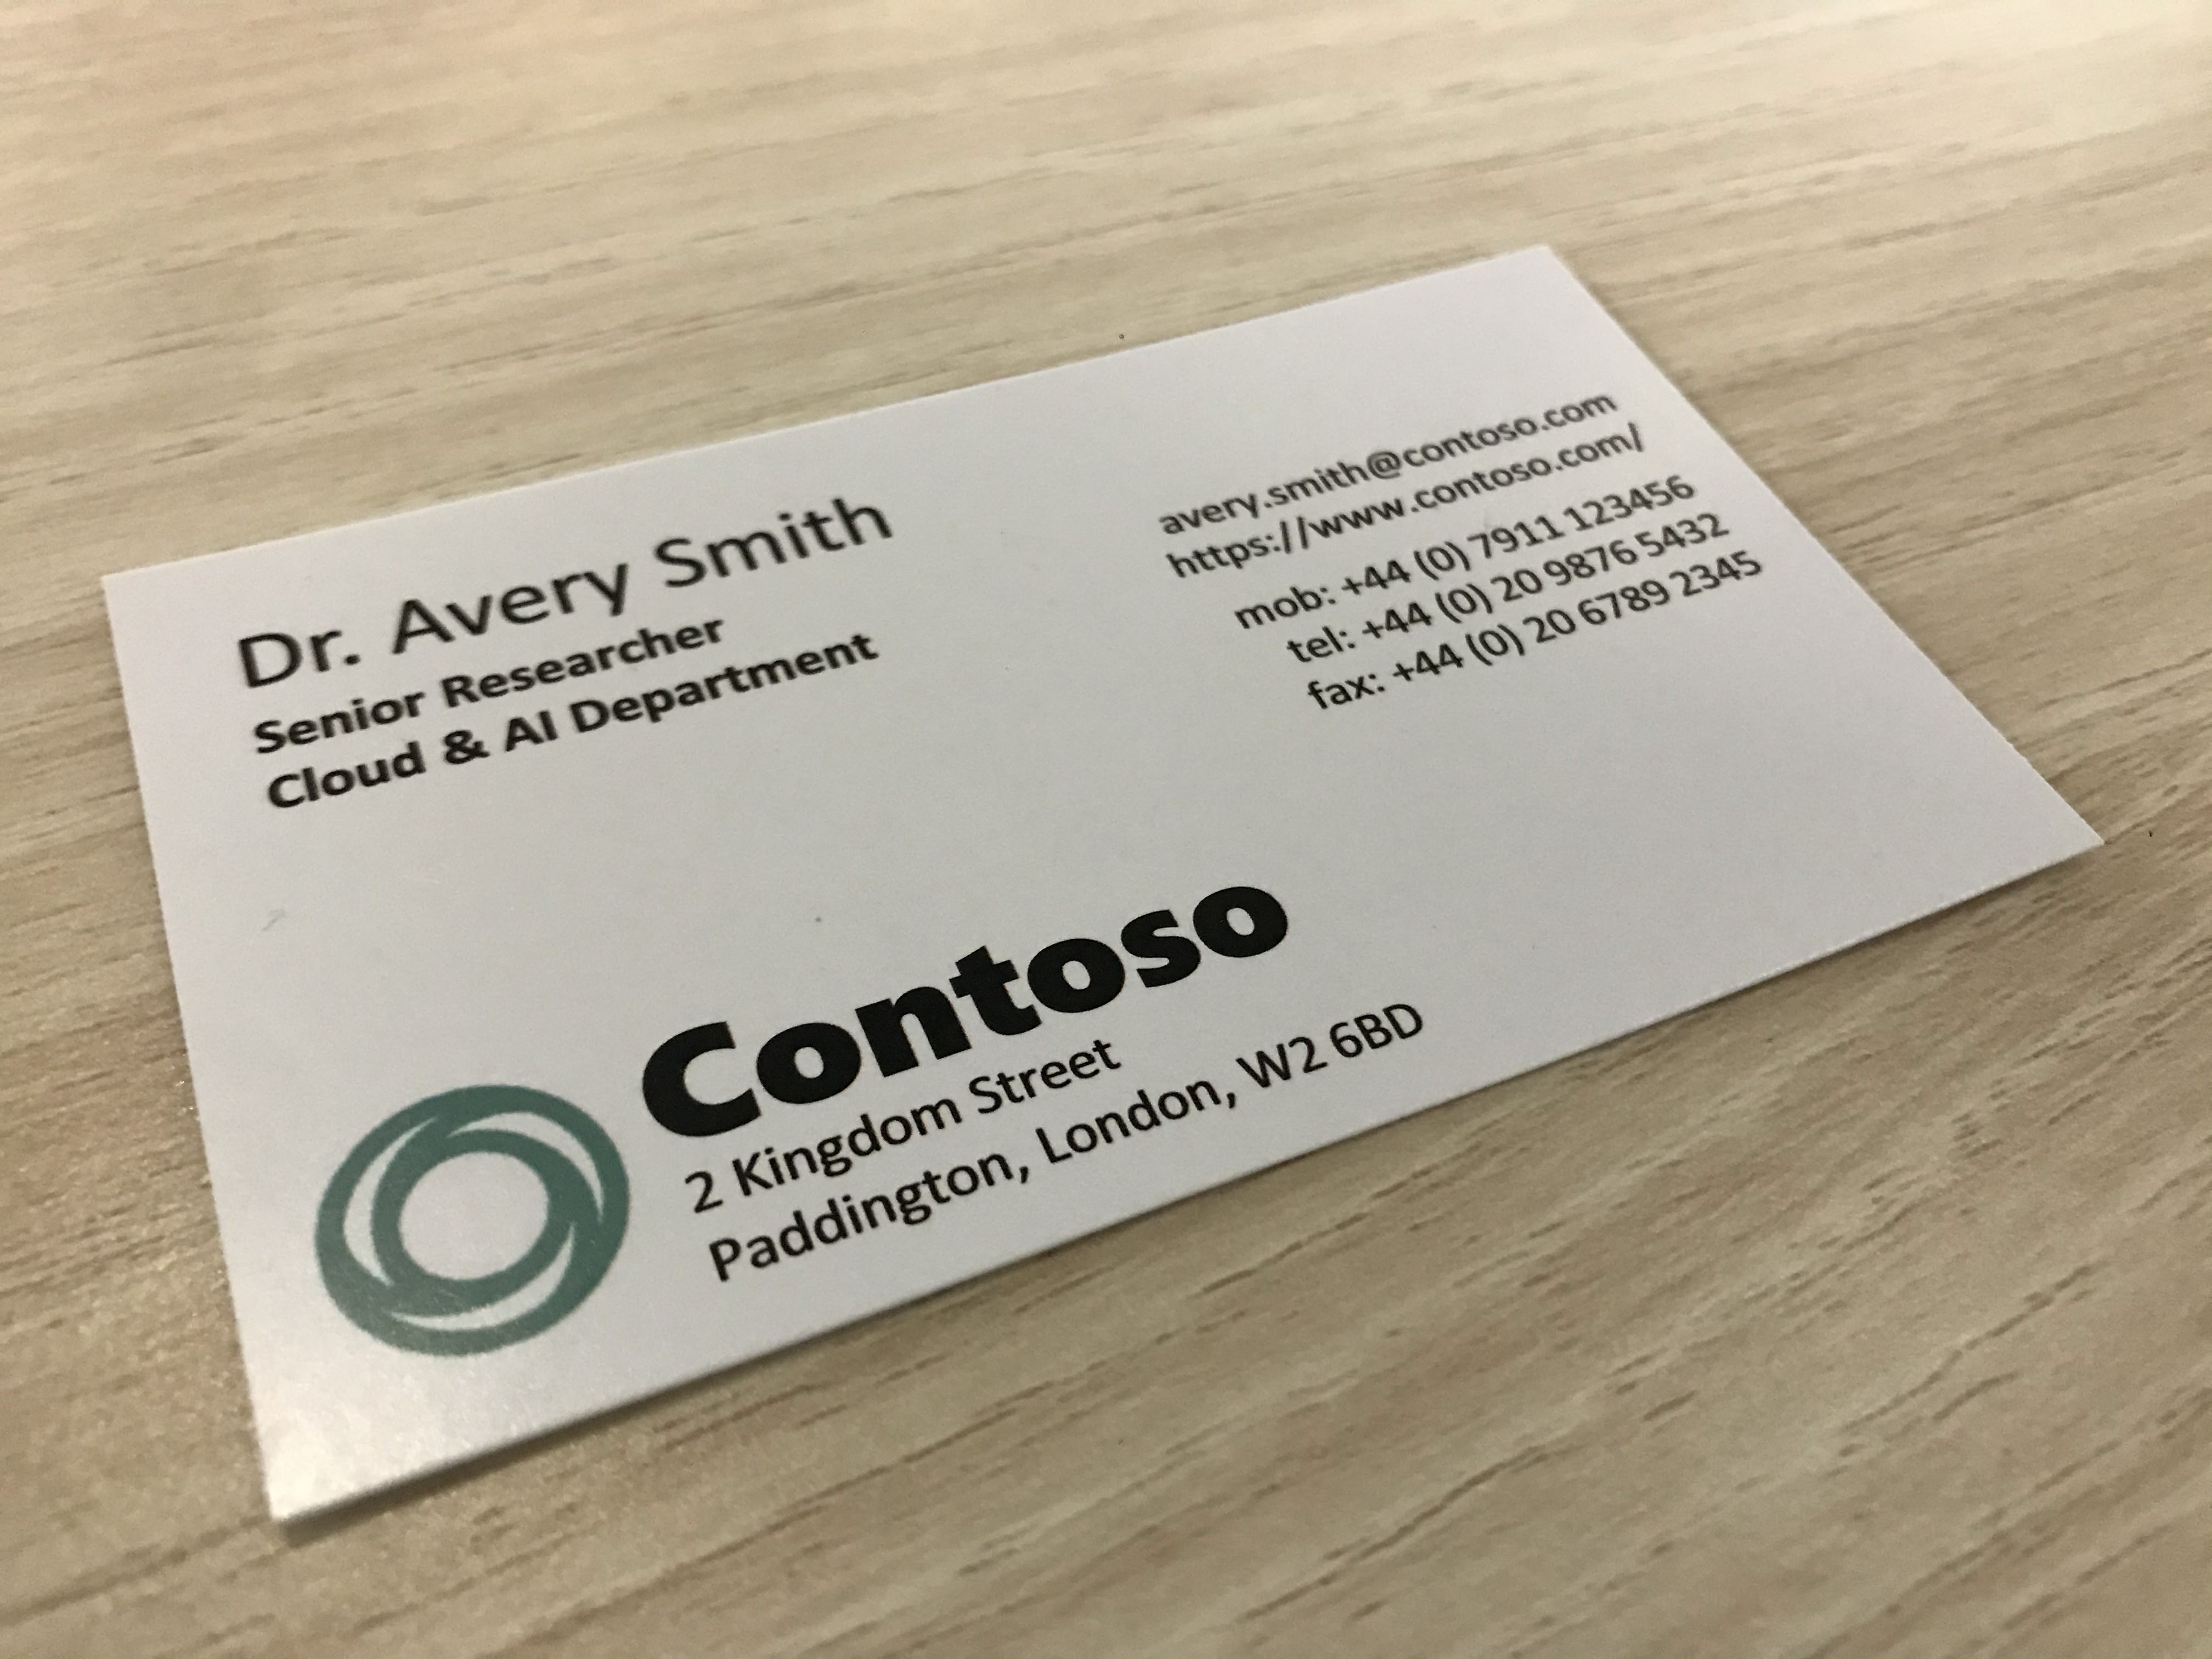 La fotografia mostra un biglietto da visita di una società denominata Contoso.